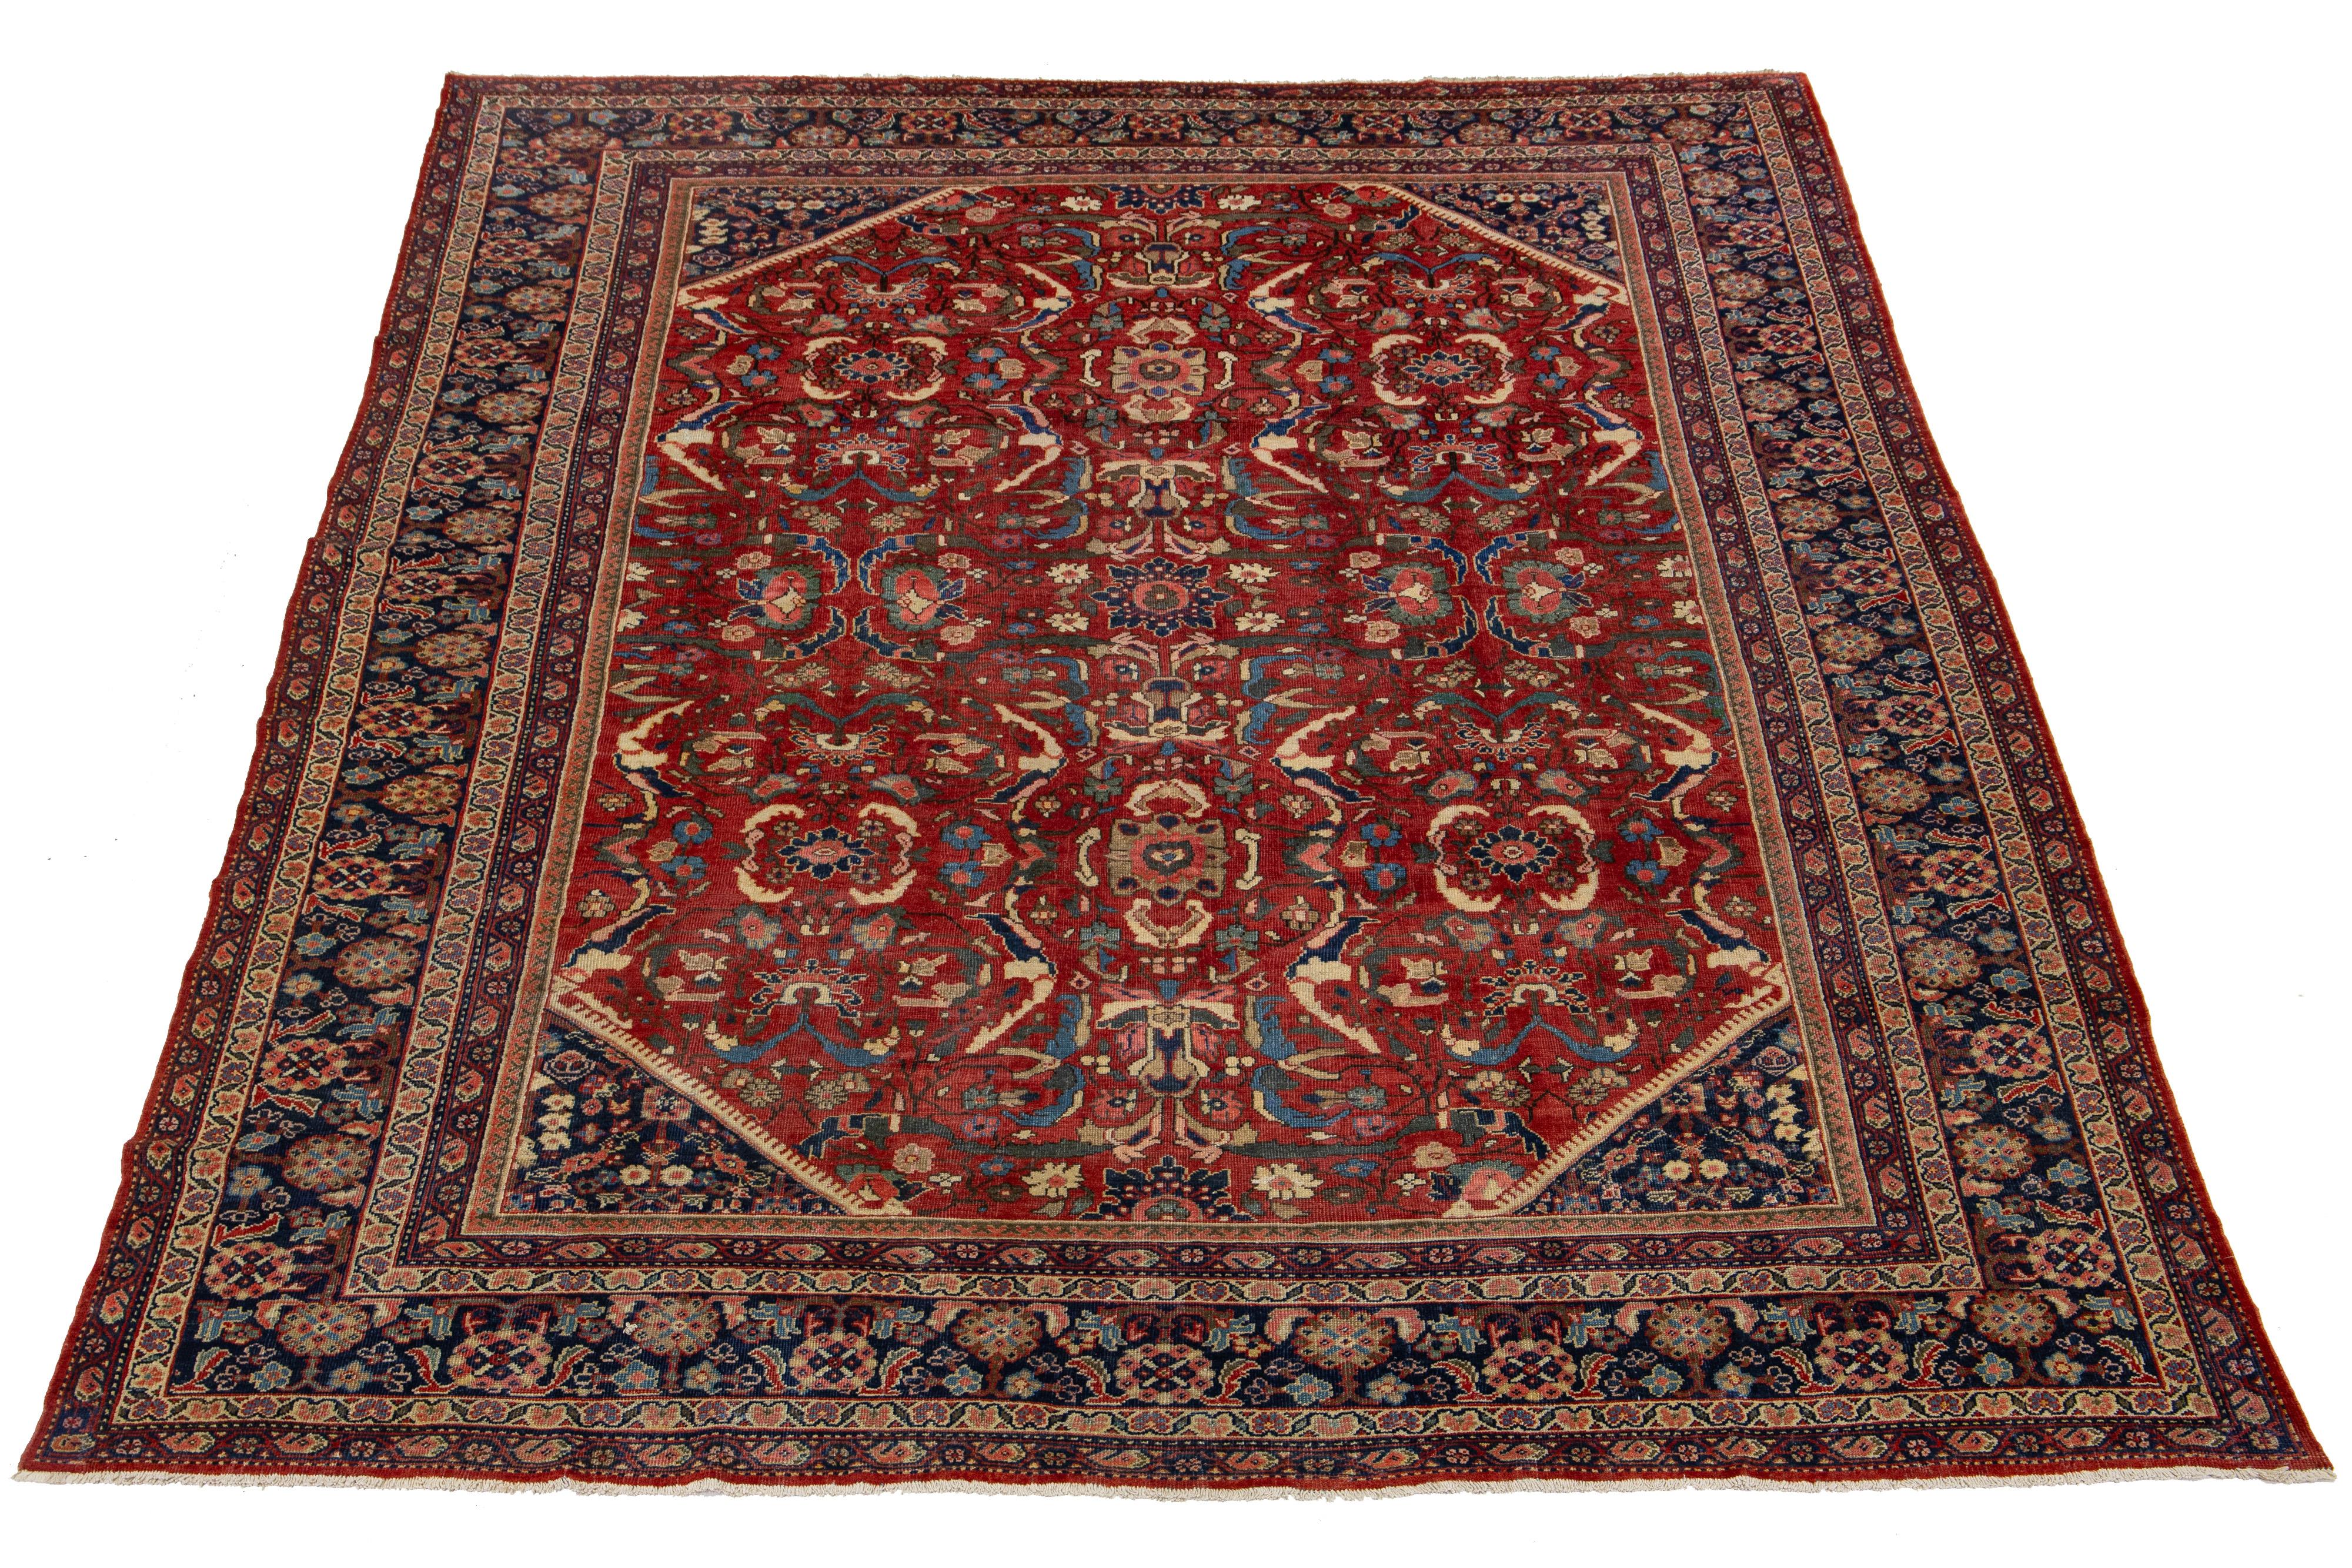 Tapis en laine persan Mahal du XIXe siècle, fait à la main, avec champ rouge et motifs floraux multicolores. 

Ce tapis mesure 10' x 13'6